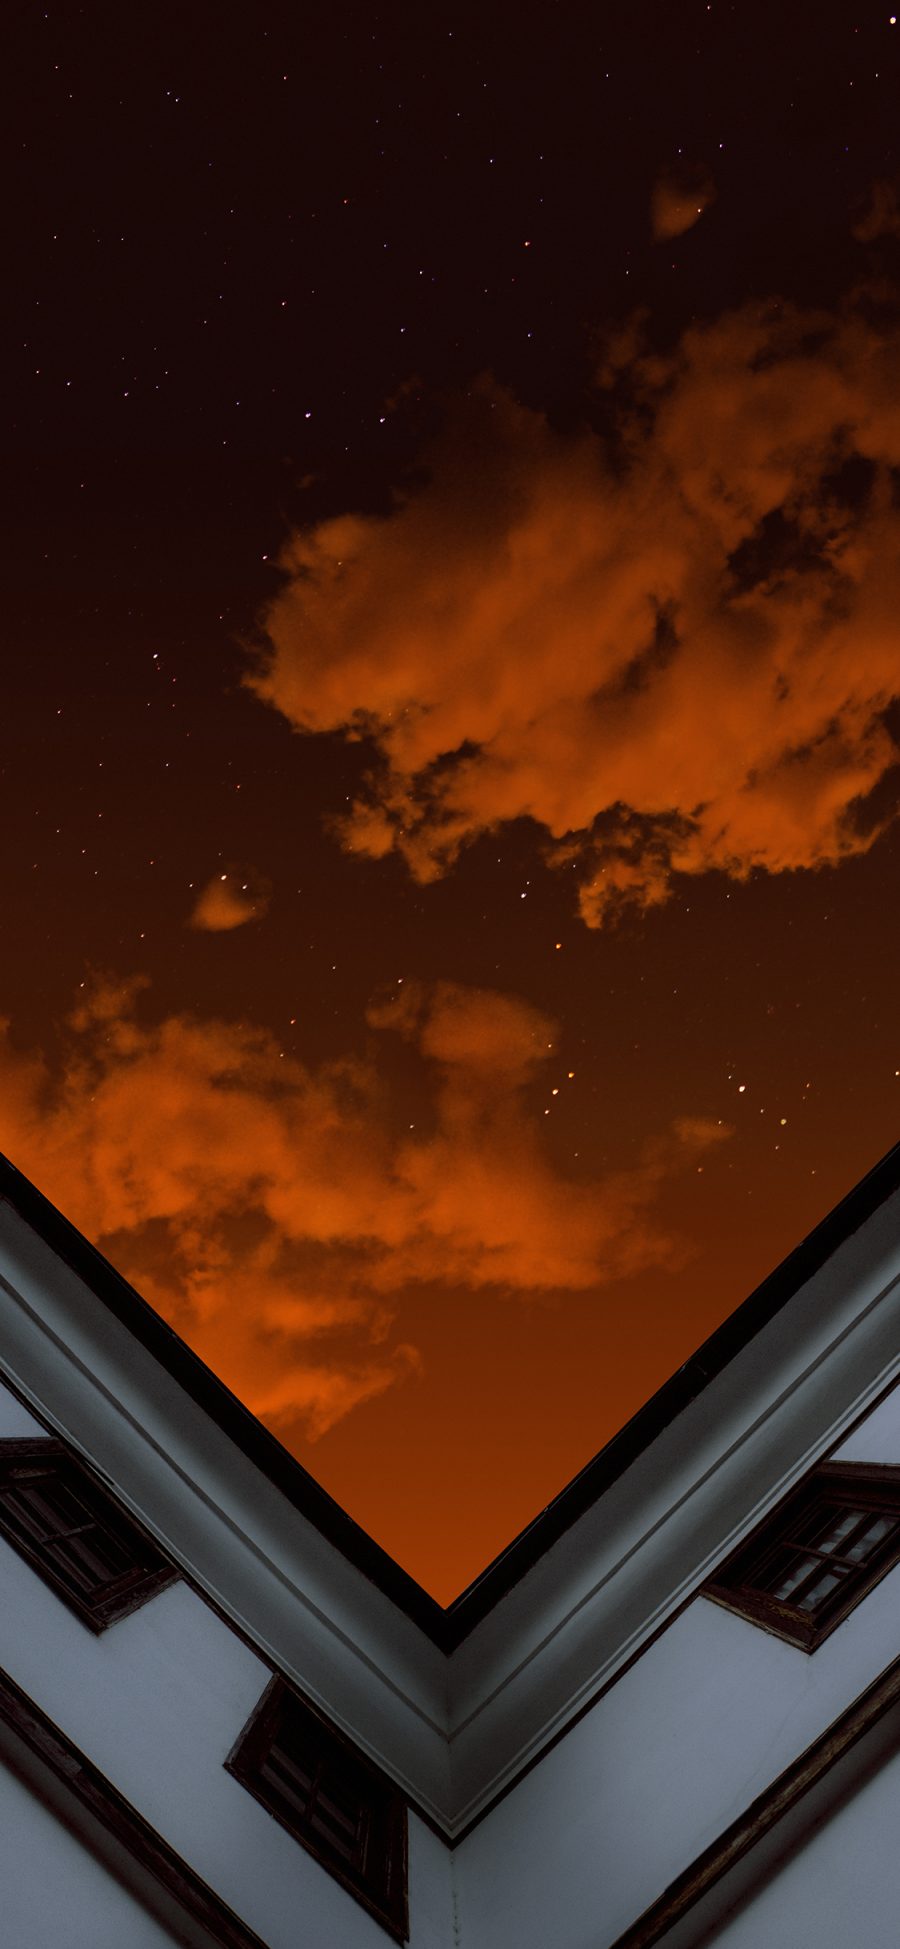 [2436×1125]建筑 高楼 天空 星空夜景 苹果手机壁纸图片